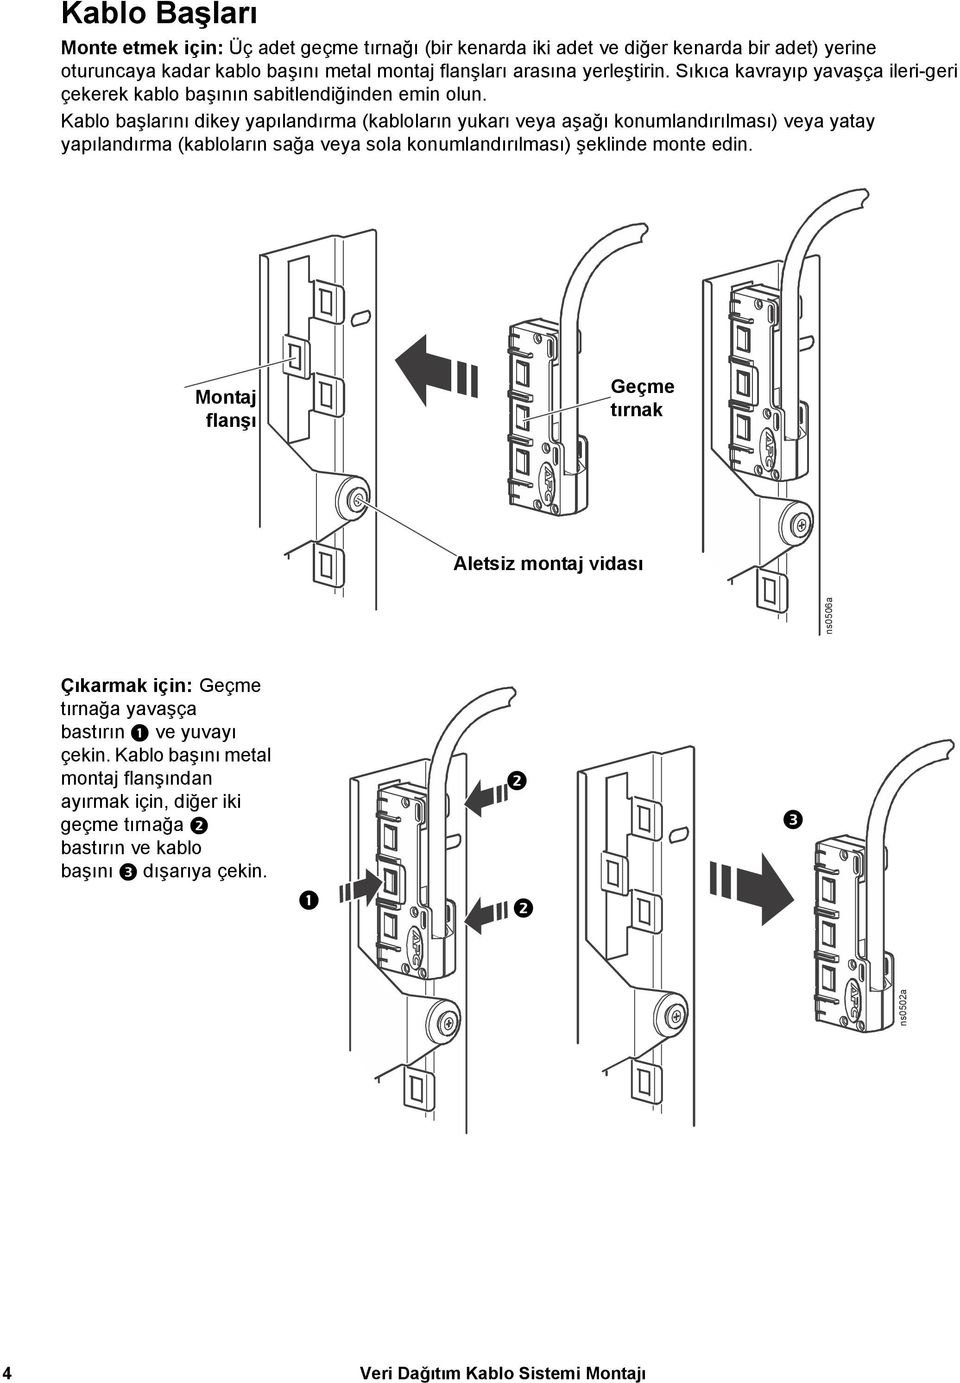 Kablo başlarını dikey yapılandırma (kabloların yukarı veya aşağı konumlandırılması) veya yatay yapılandırma (kabloların sağa veya sola konumlandırılması) şeklinde monte edin.